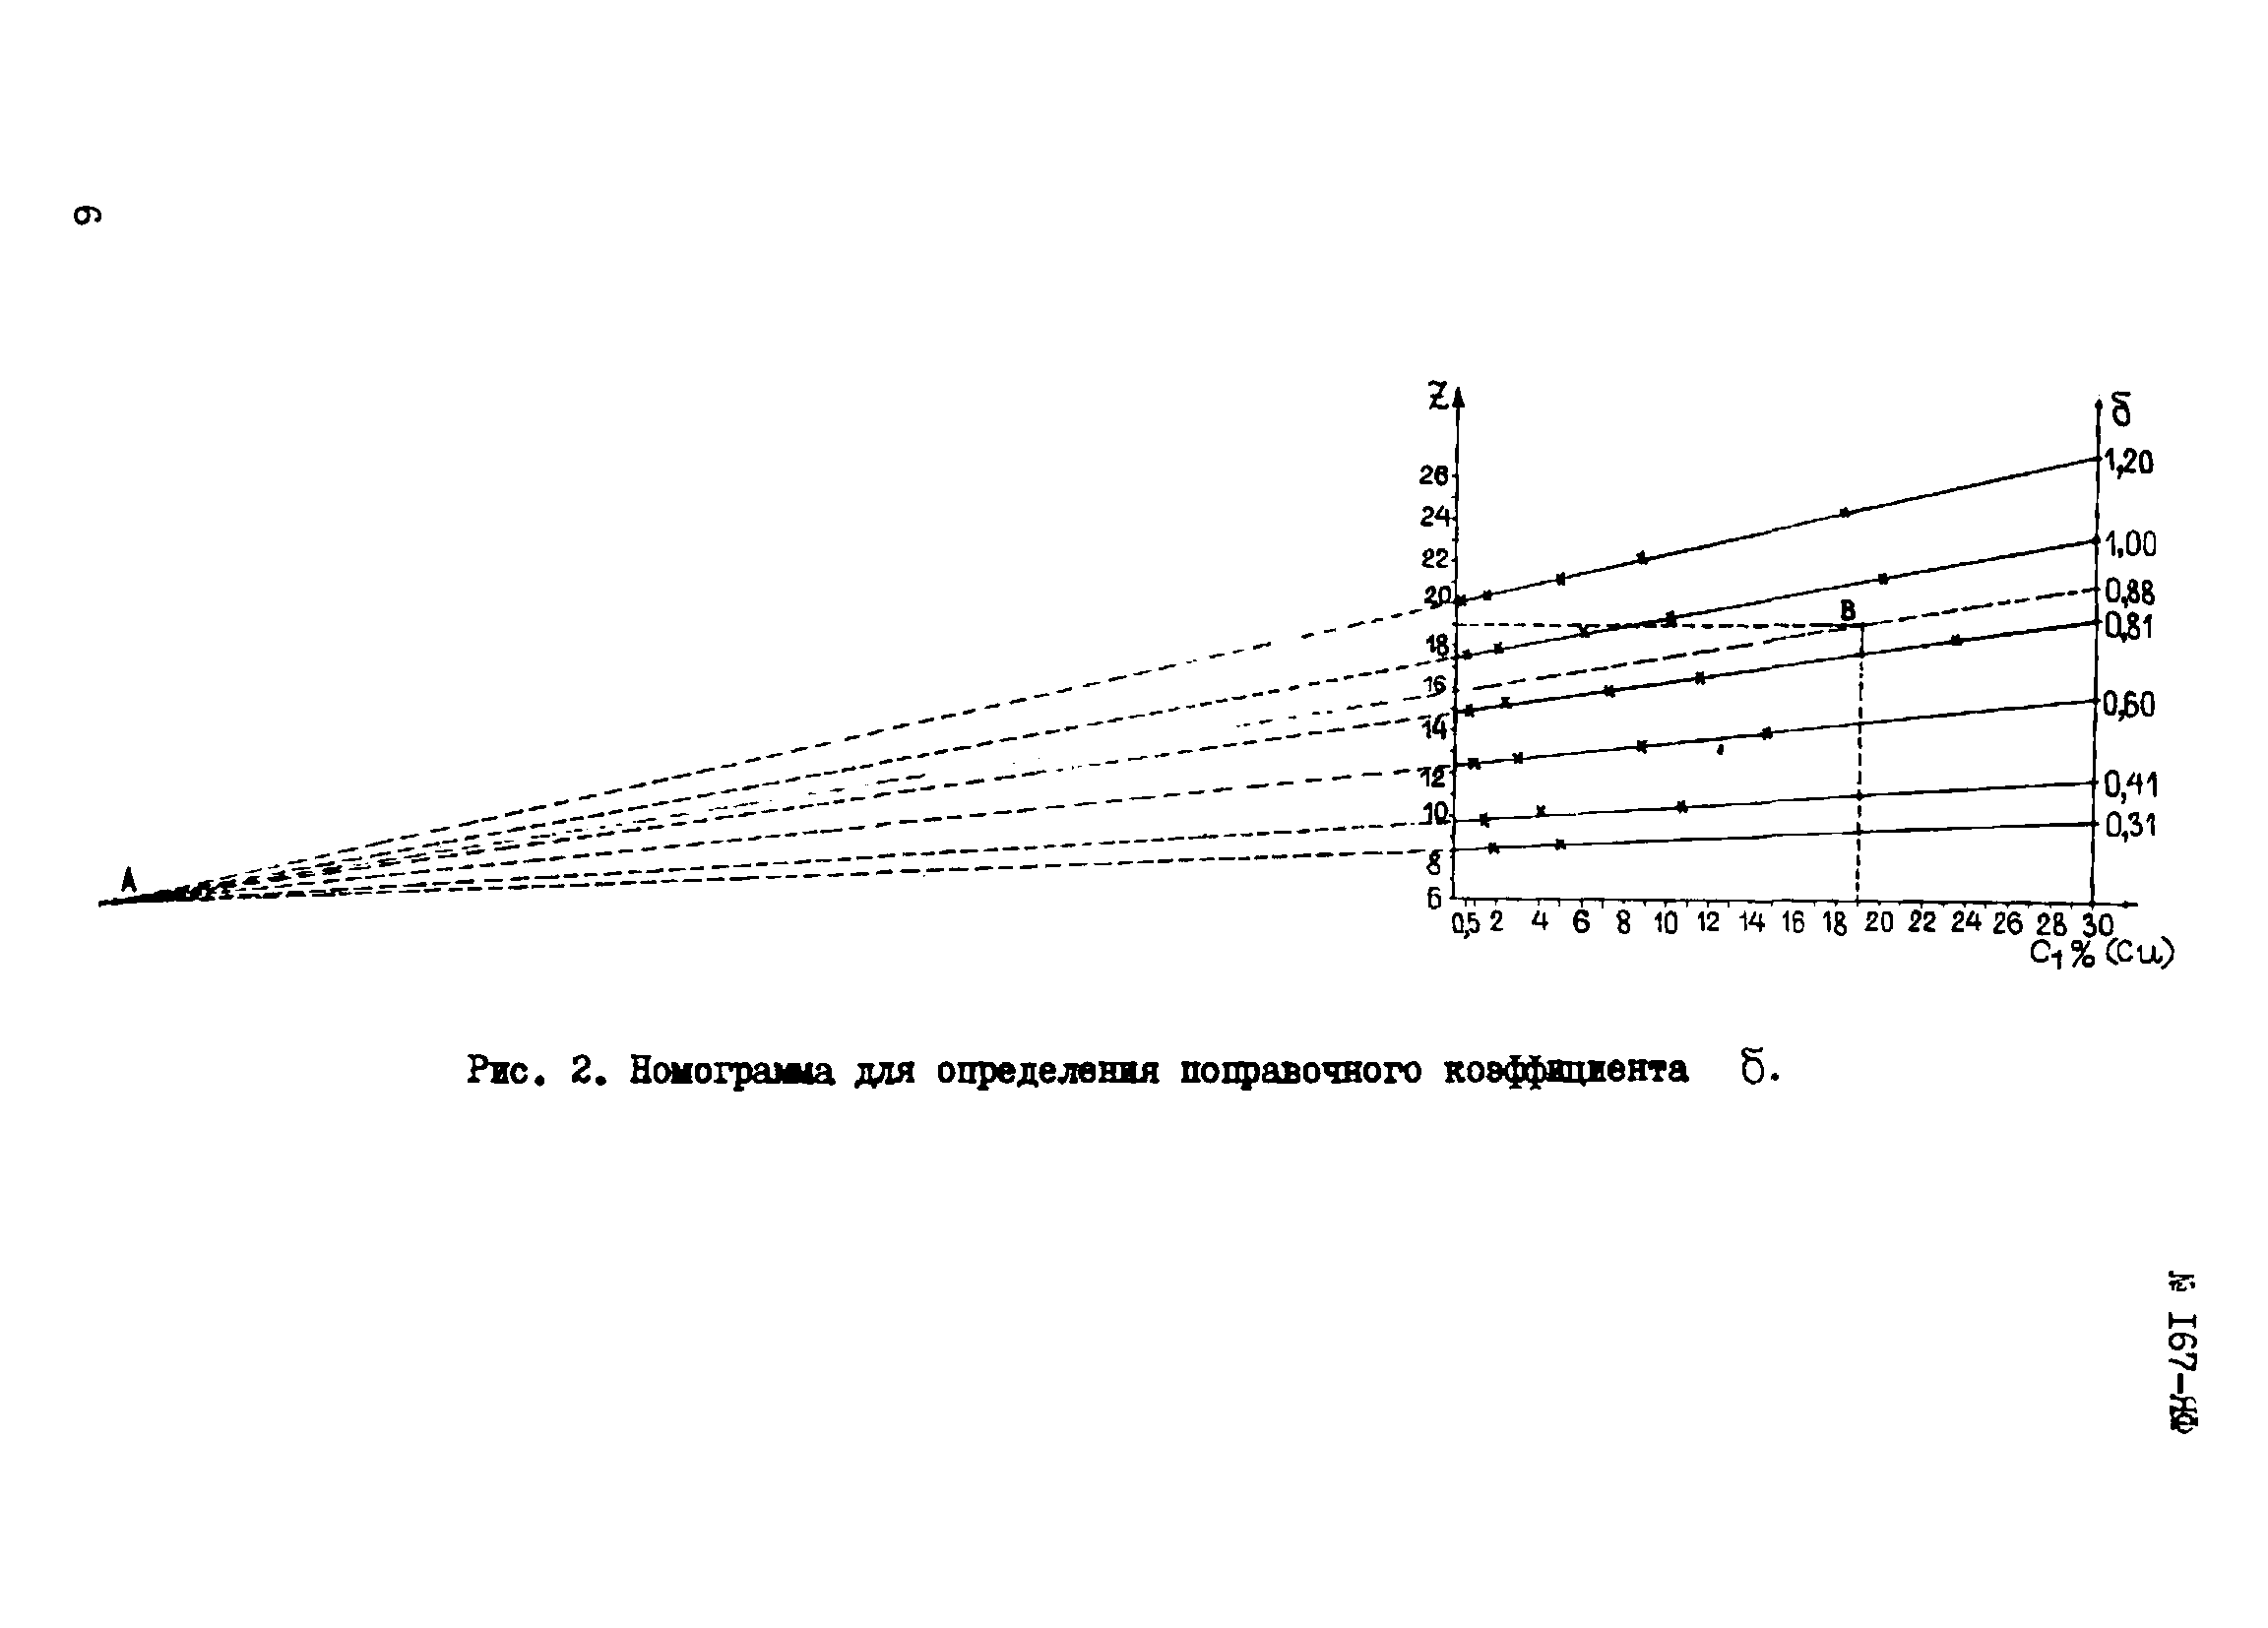 Инструкция НСАМ 167-ЯФ